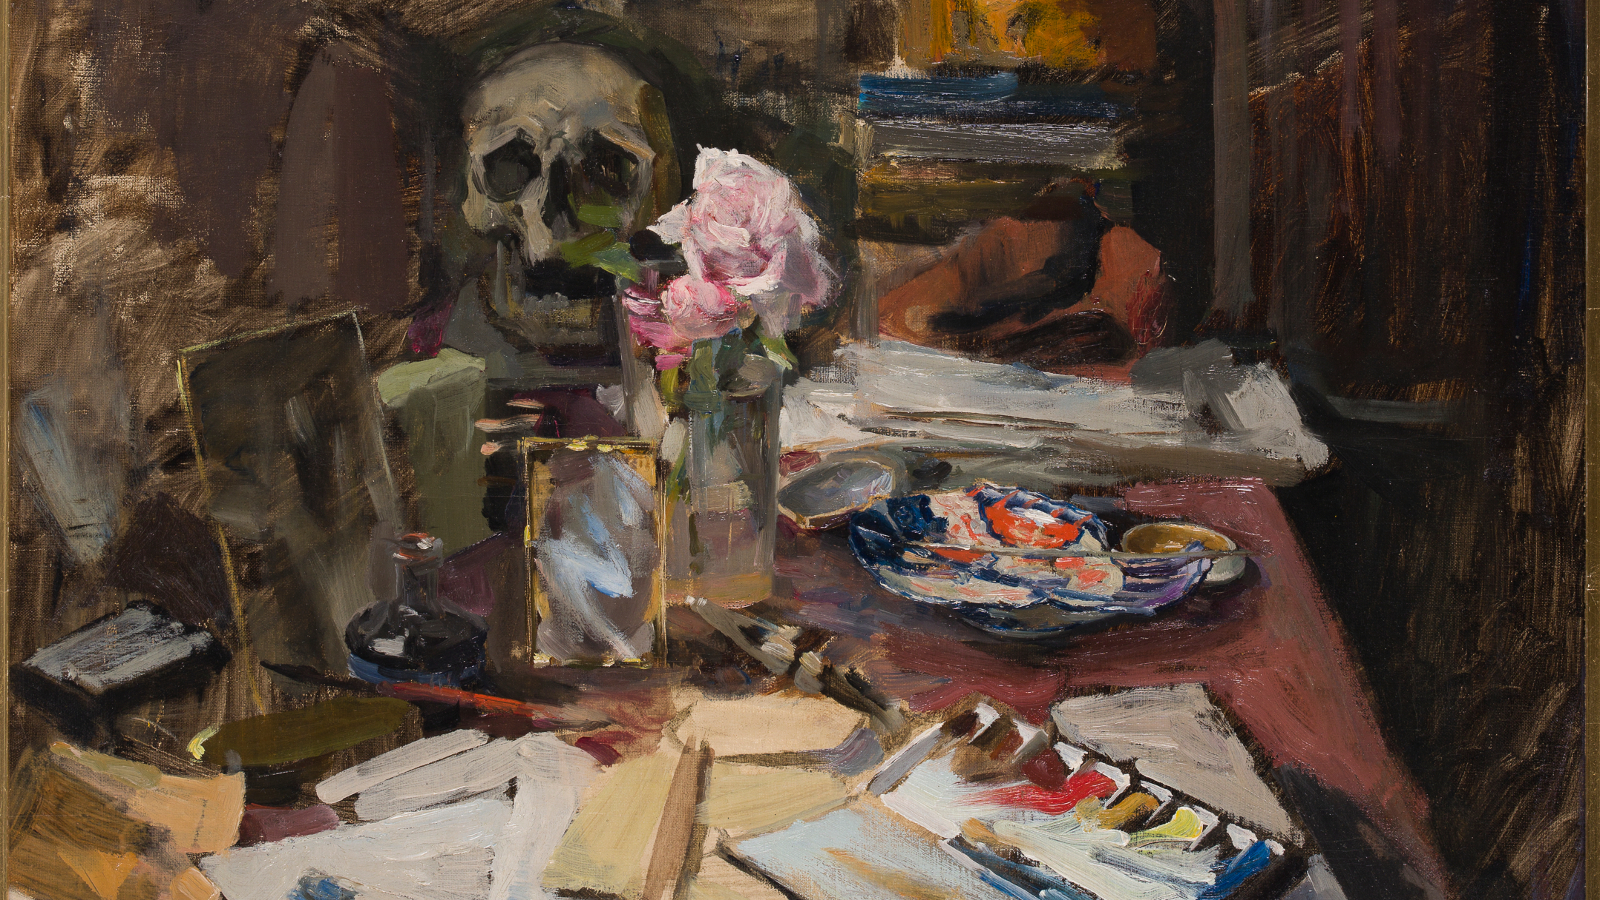 Kuvassa on maalaus Akseli Gallen-Kallelan työpöydästä, jossa on sekavasti papereita ja muita tarvikkeita. Värisävyt ovat ruskeita.